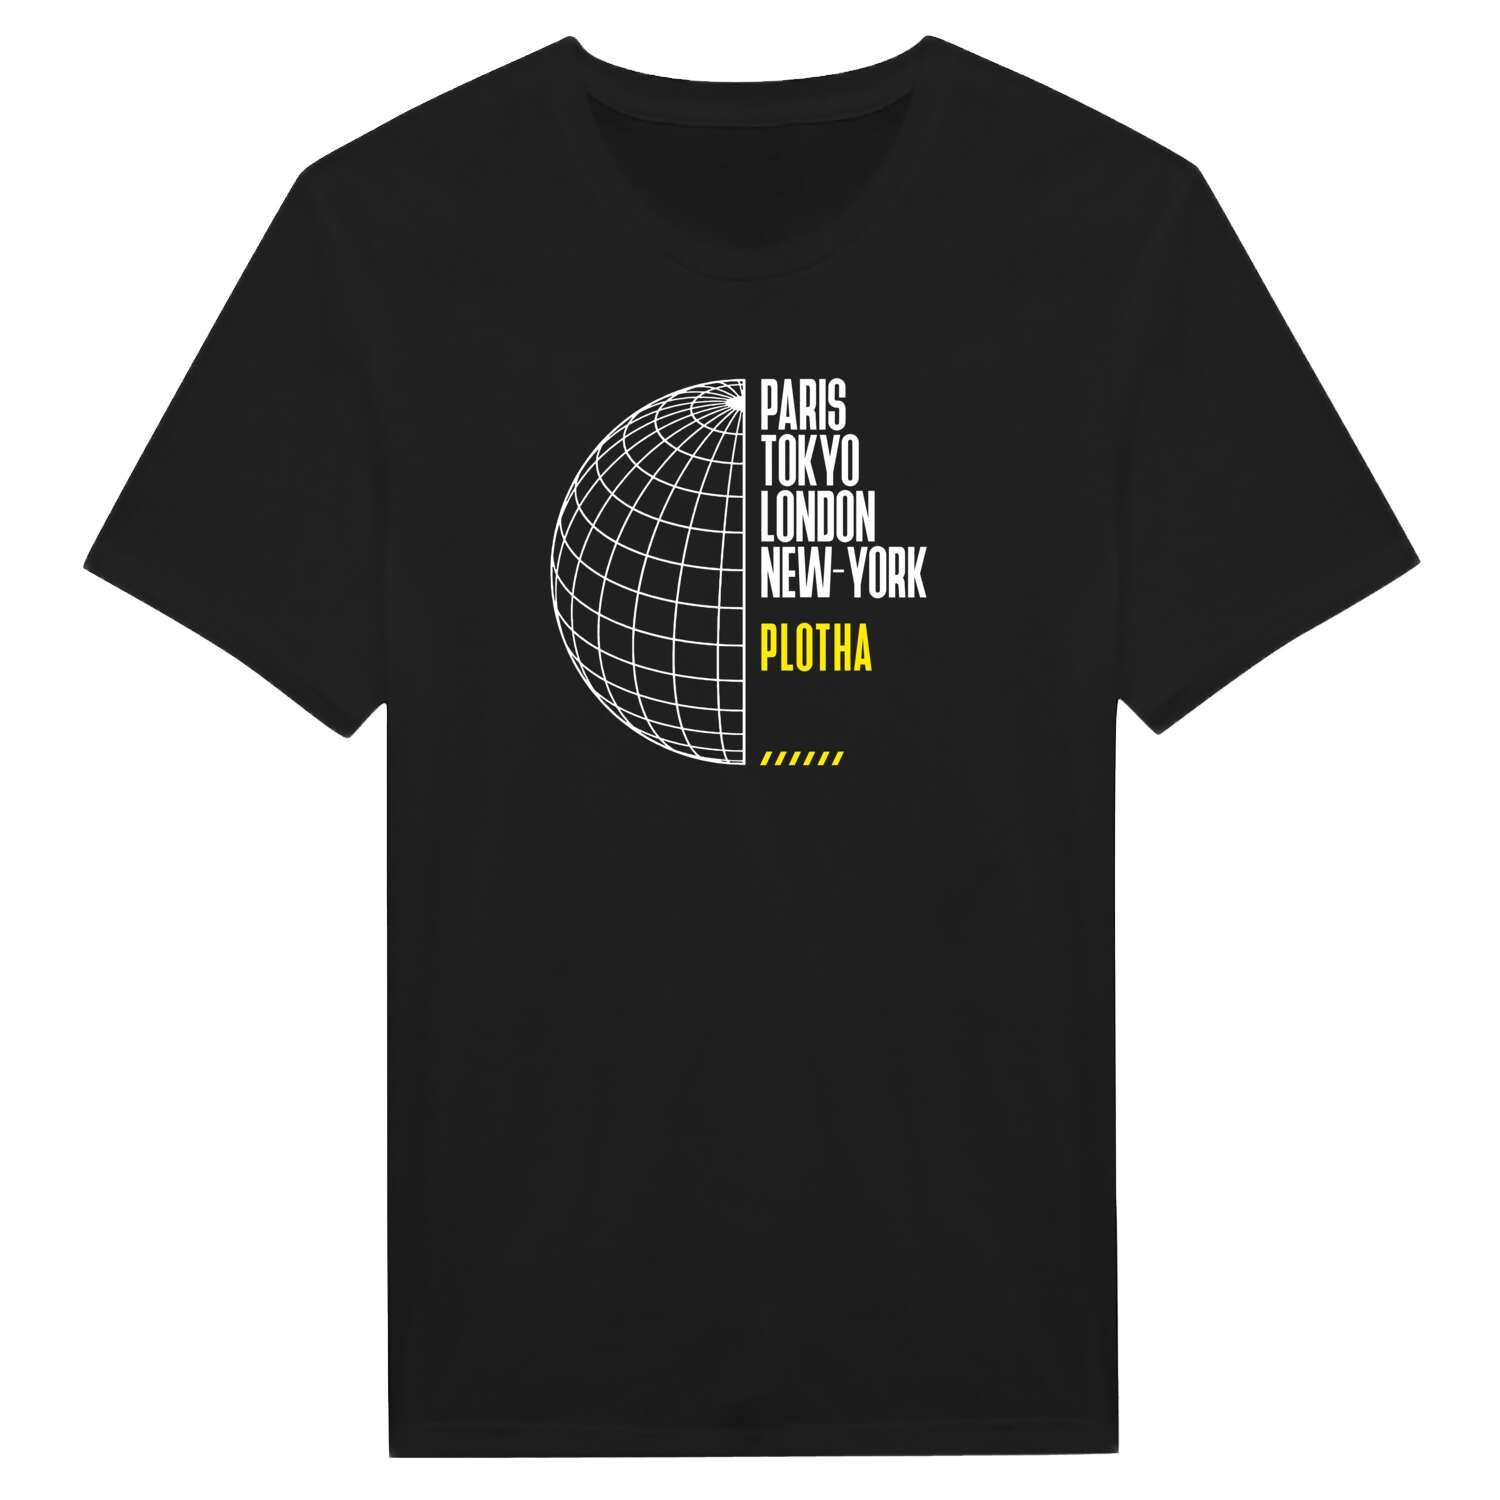 Plotha T-Shirt »Paris Tokyo London«